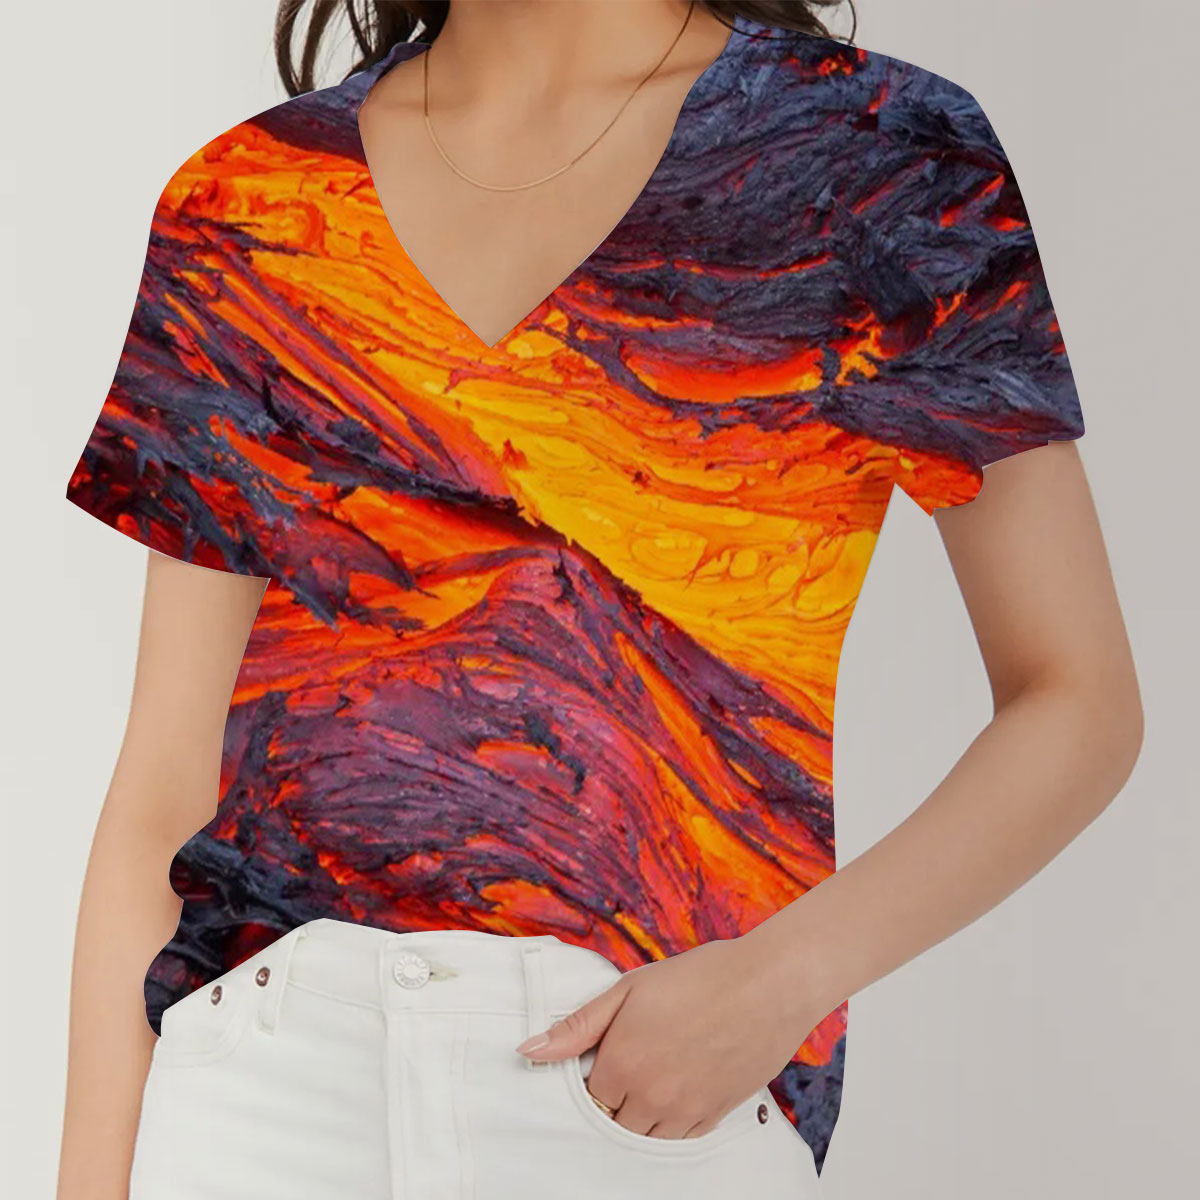 Volcano Mountain V-Neck Women's T-Shirt